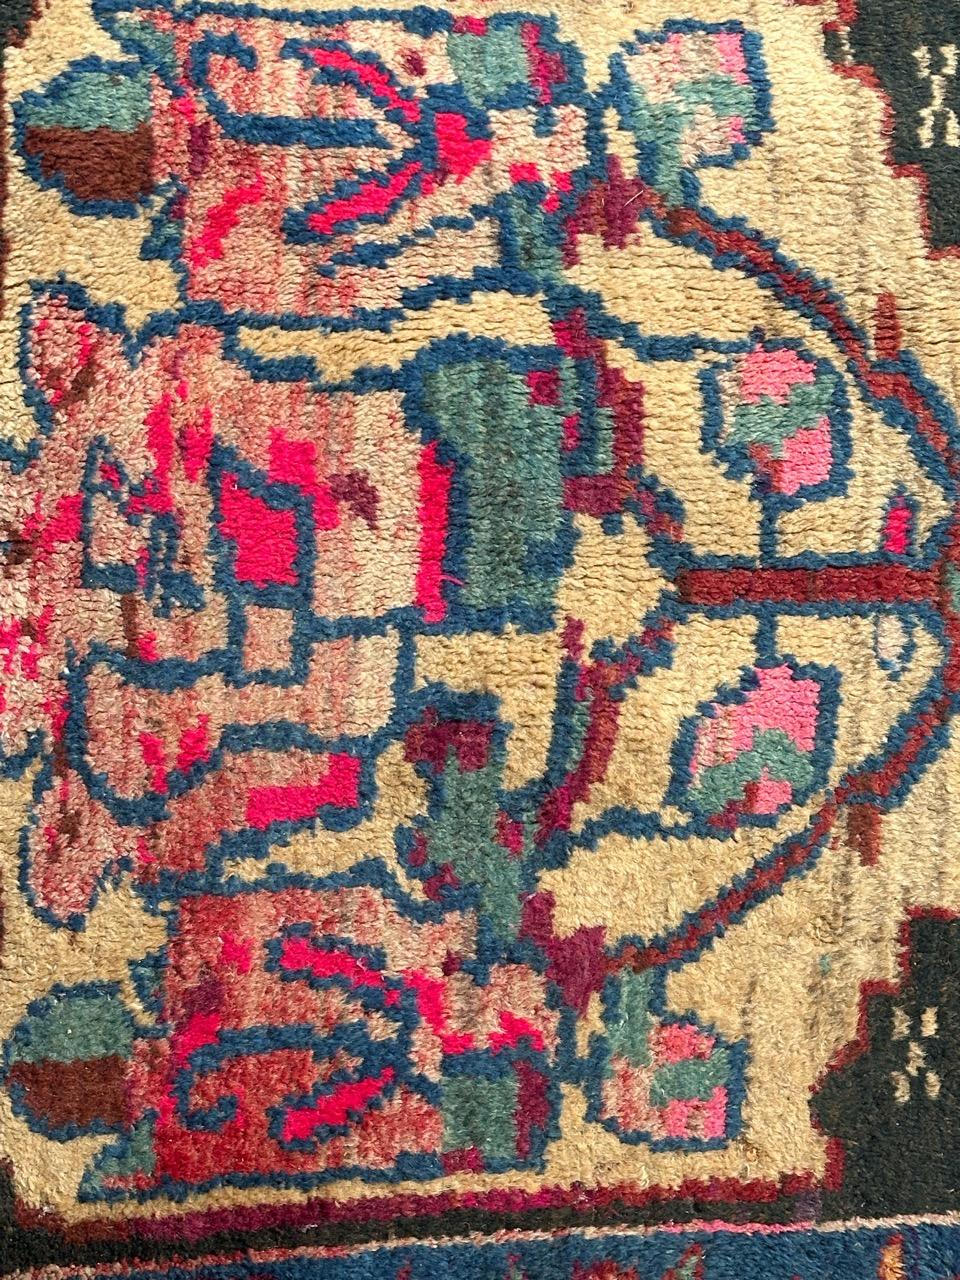 Joli tapis tribal vintage avec un joli design floral stylisé et de belles couleurs avec du jaune, du vert, du bleu, du rose et du rouge, entièrement noué à la main avec de la laine sur une base en coton.

✨✨✨
